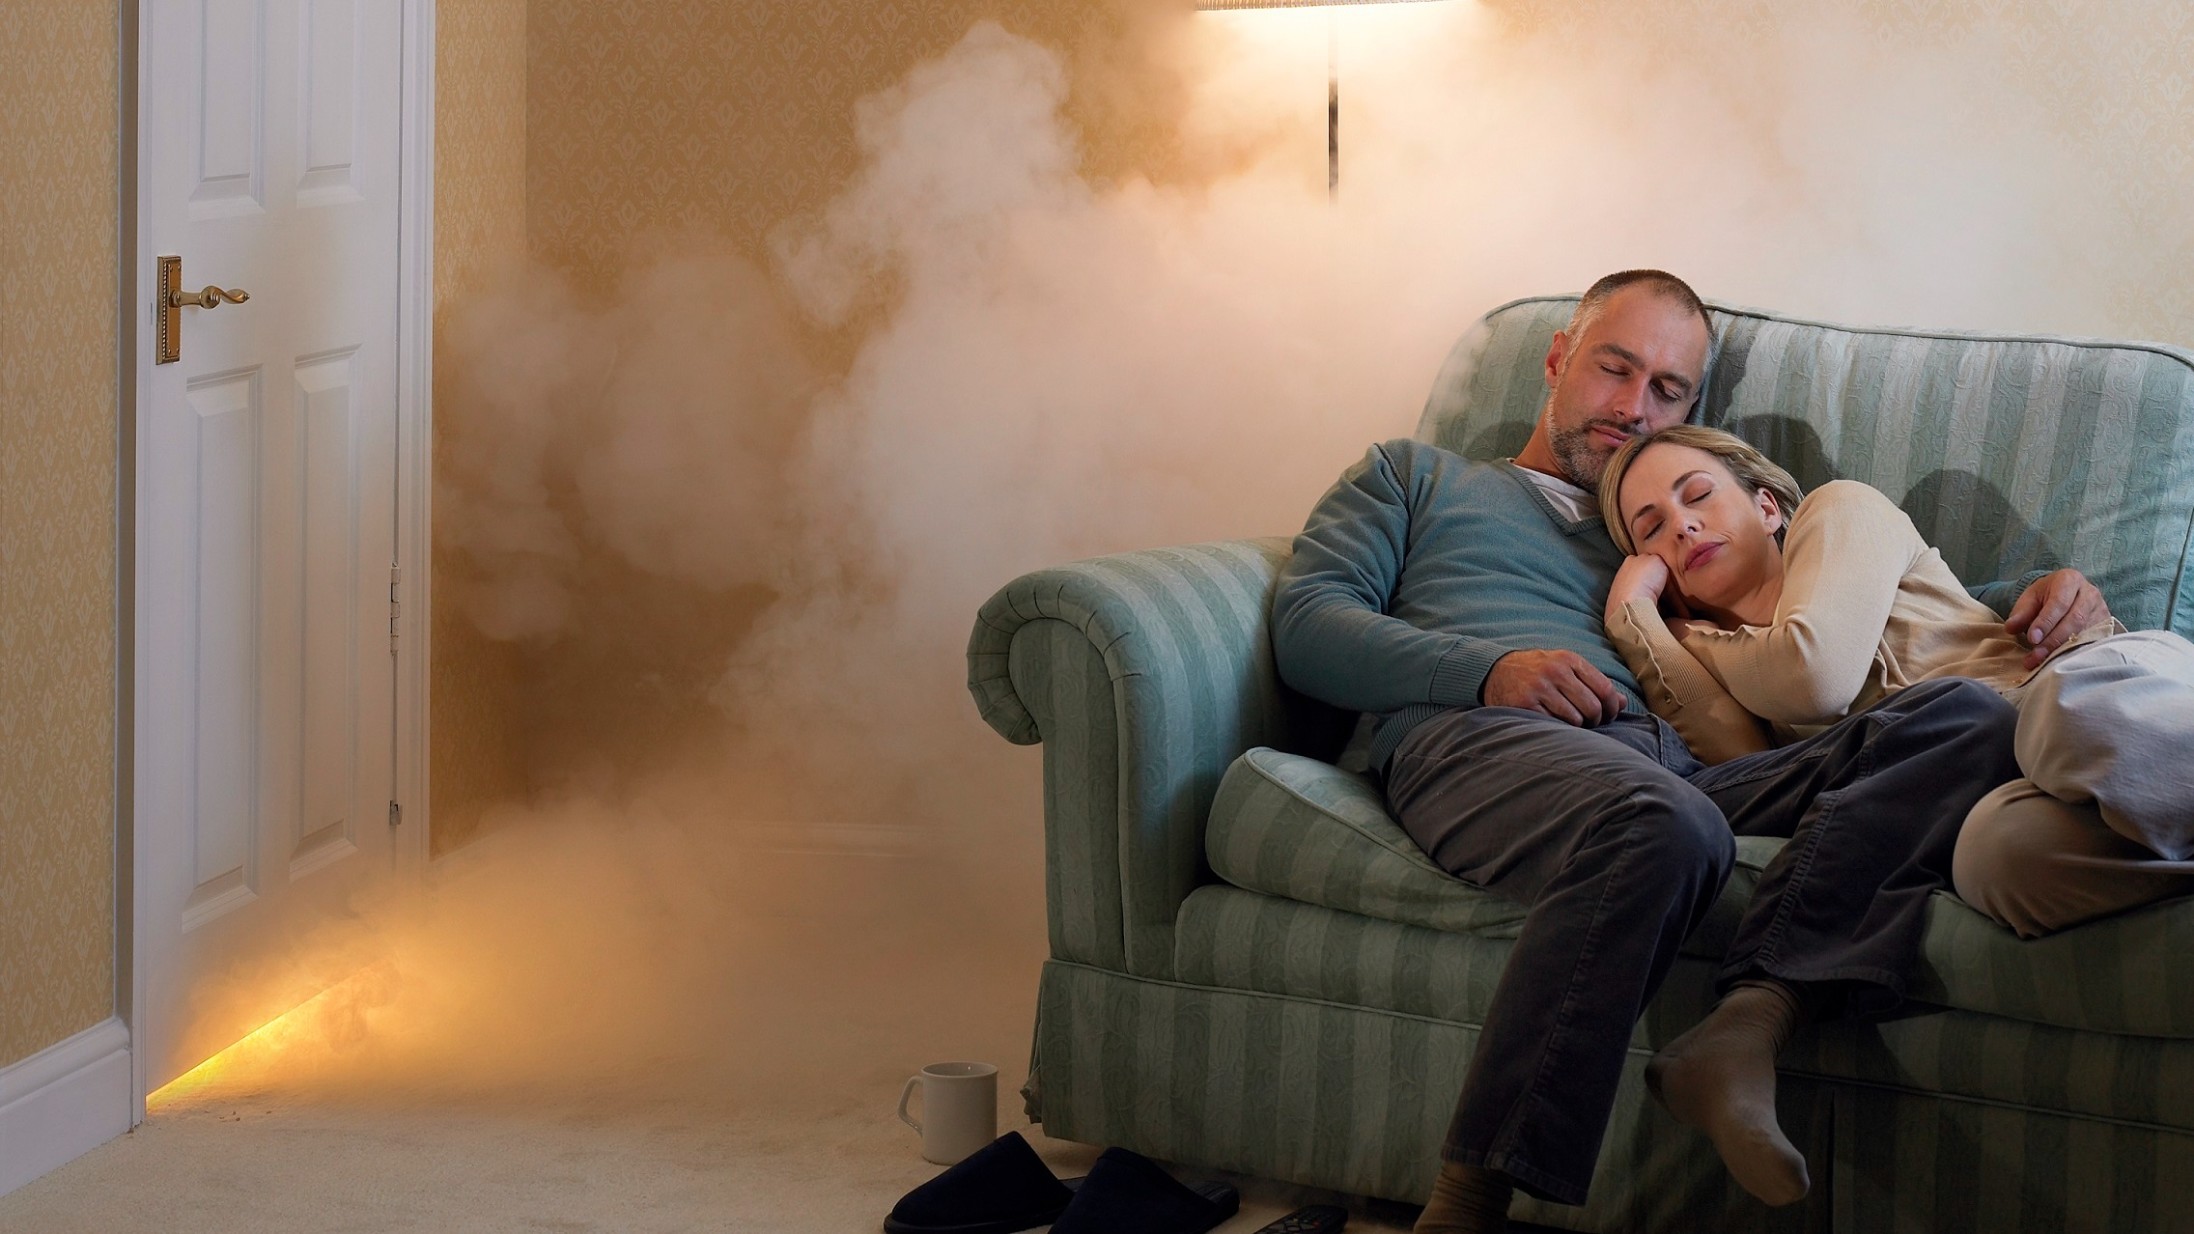 Selbstbehalt Haushaltsversicherung: Paar schläft auf Sofa, während Feuer ausbricht